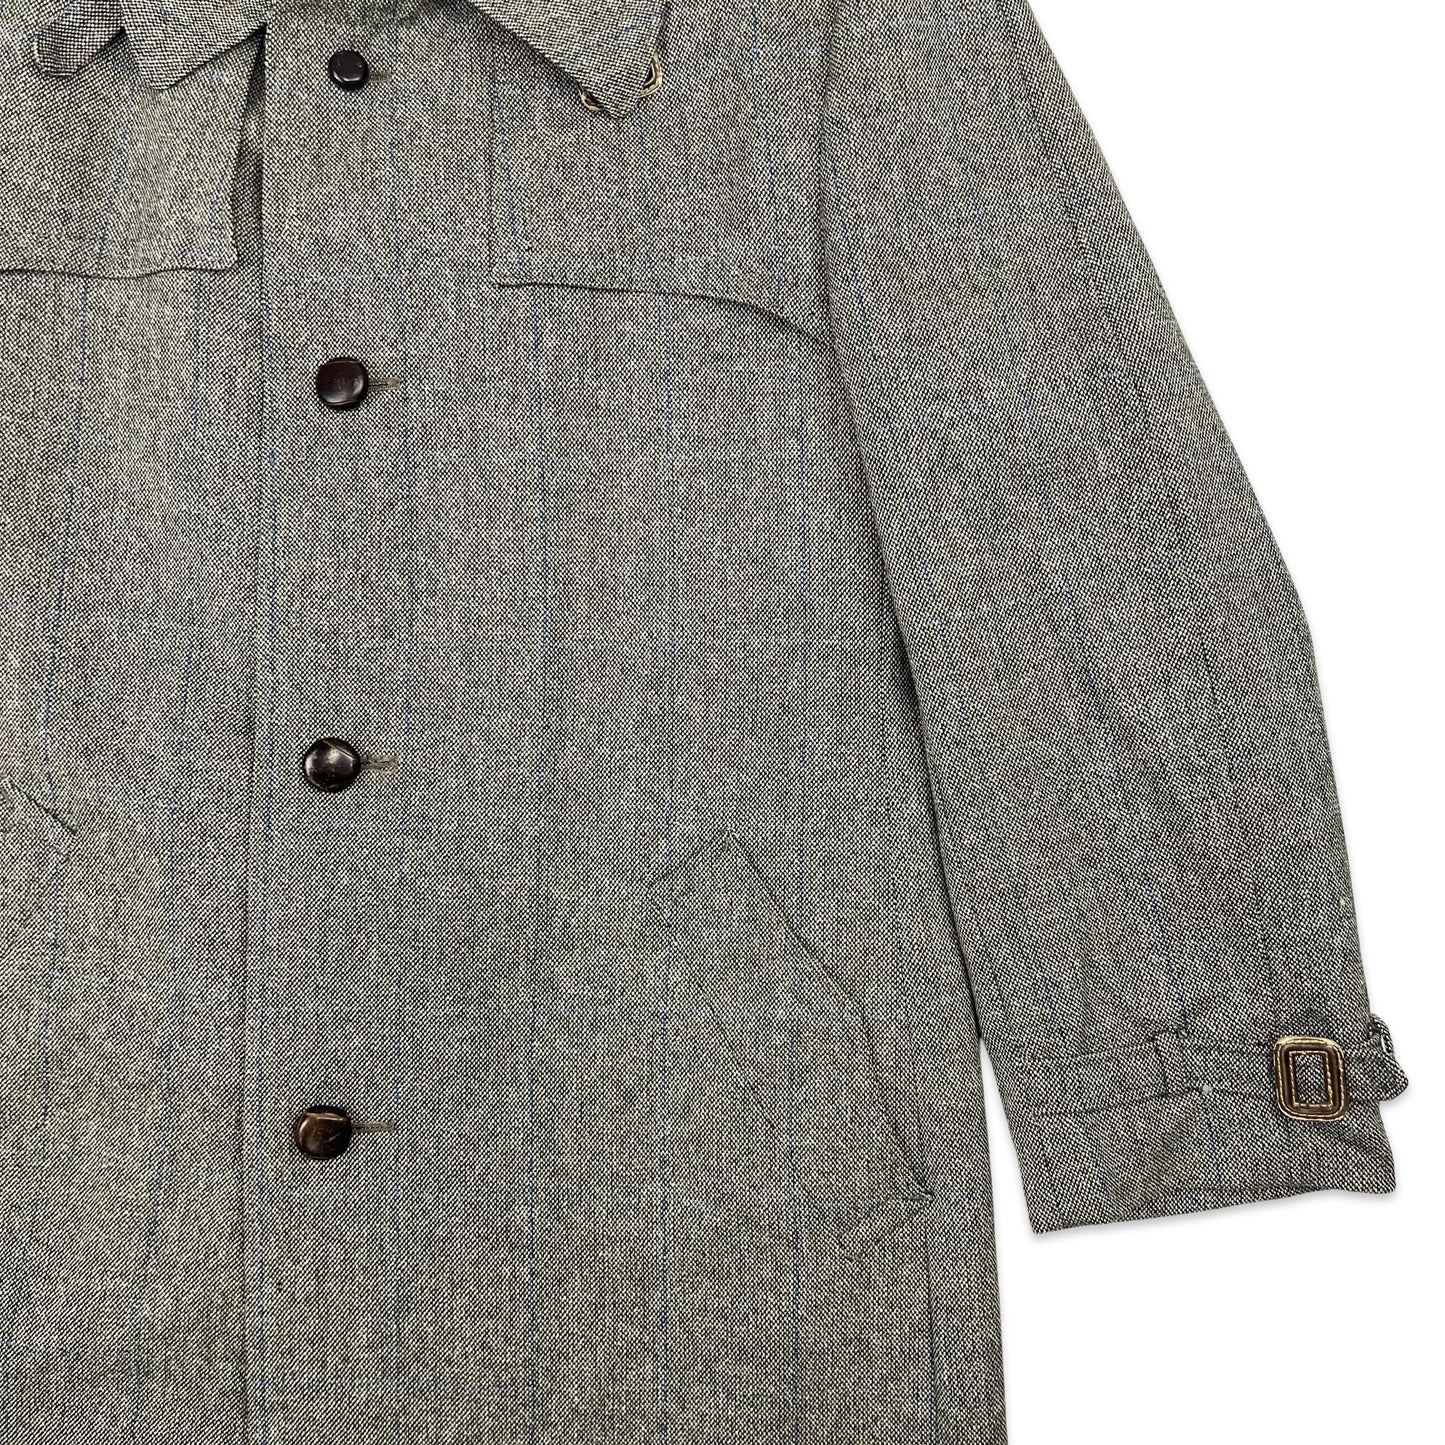 Vintage 70s Wool Tweed Midi Coat Grey Brown Blue 14 16